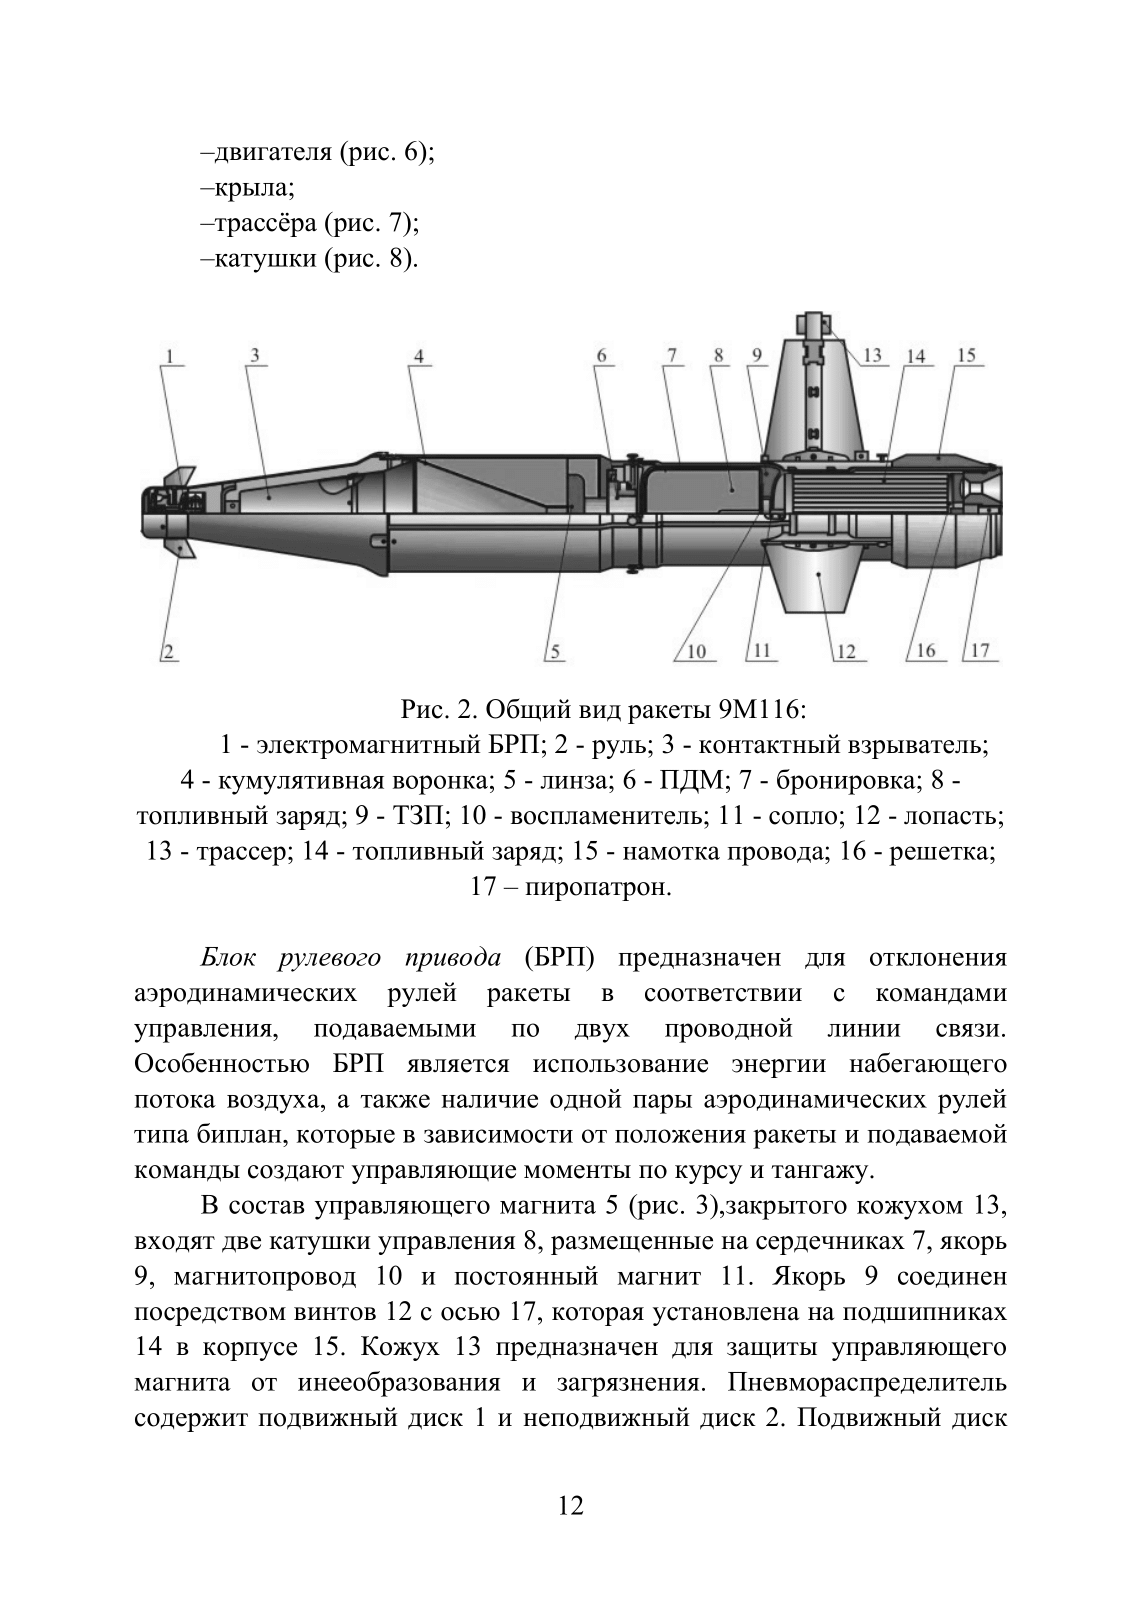 Устройство и функционирование противотанковых ракетных комплексов У 82 (ПТРК) второго поколения: 9К115 «Метис», 9М113 «Конкурс» 9М111 «Фагот». . 